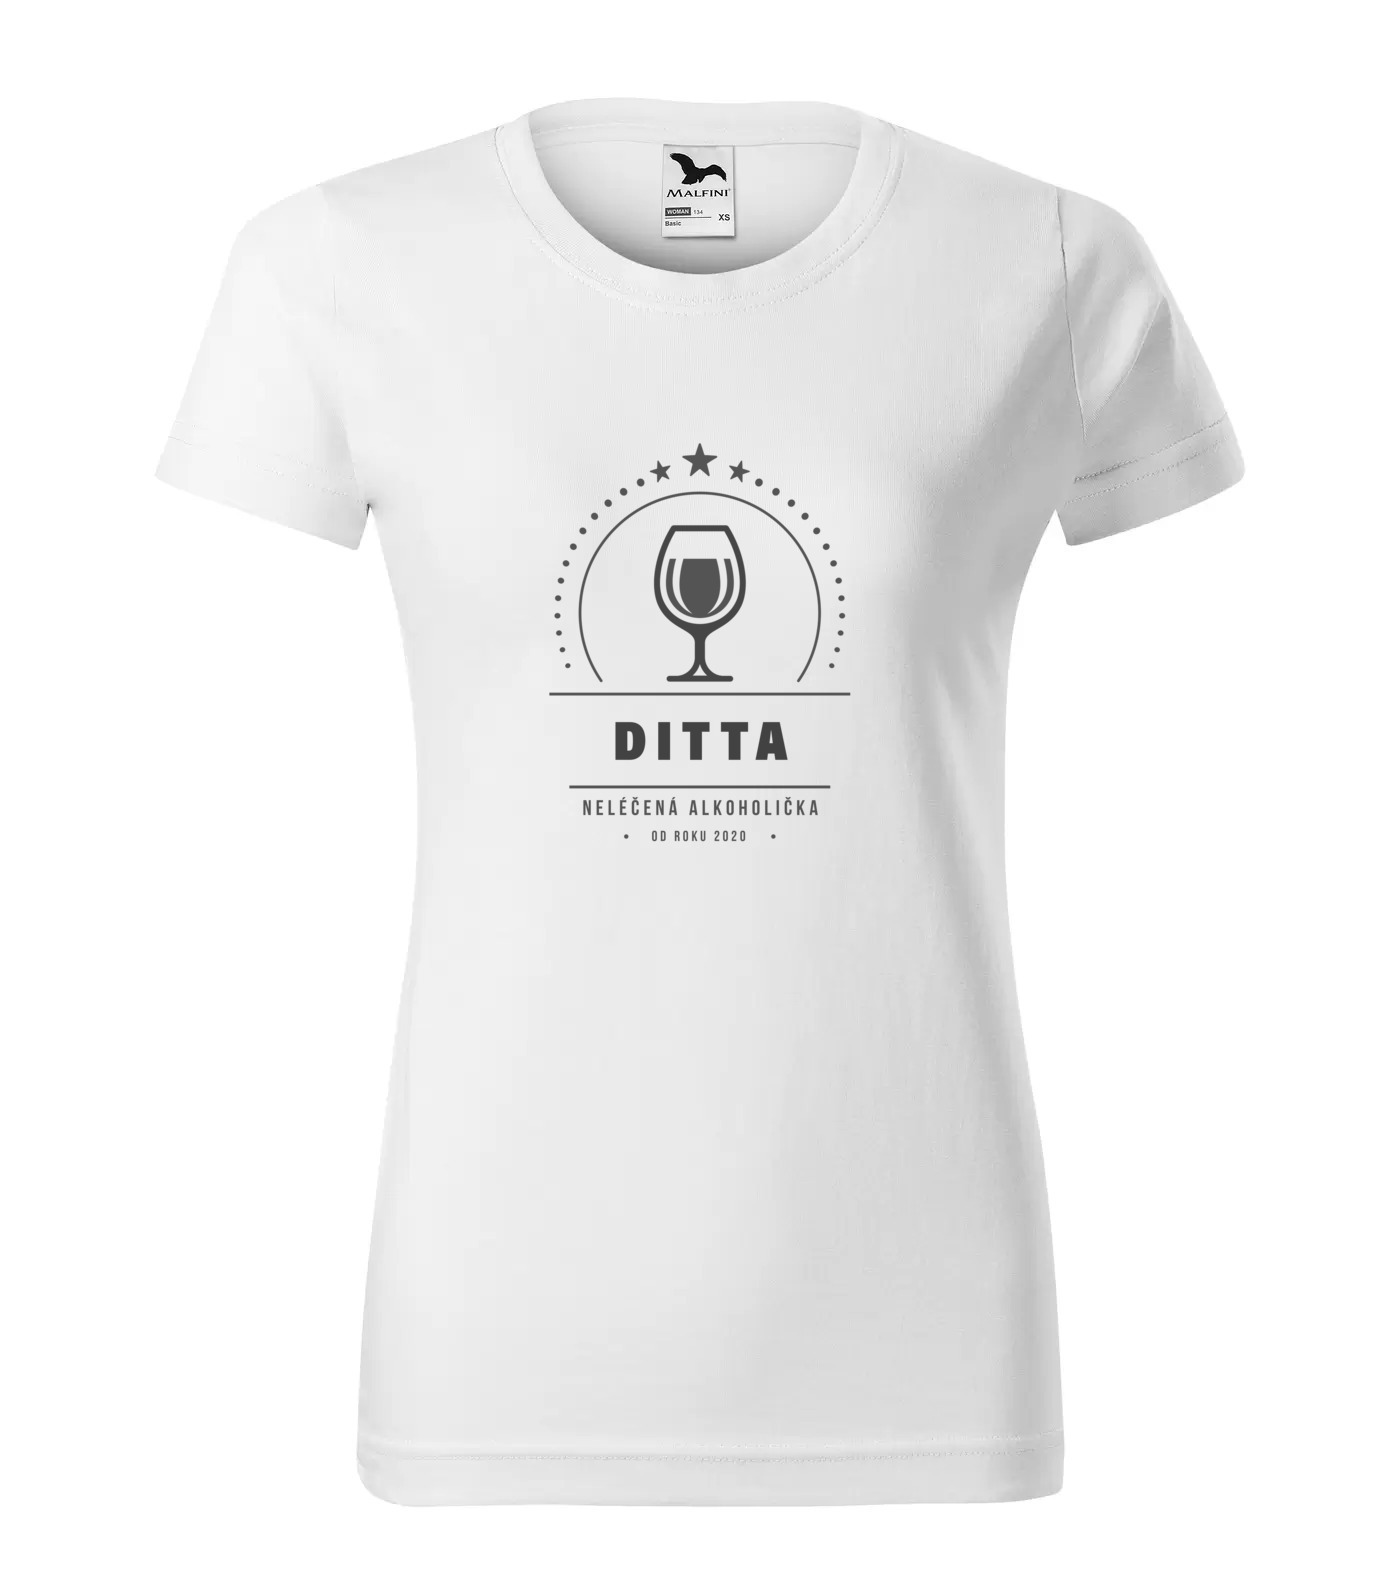 Tričko Alkoholička Ditta